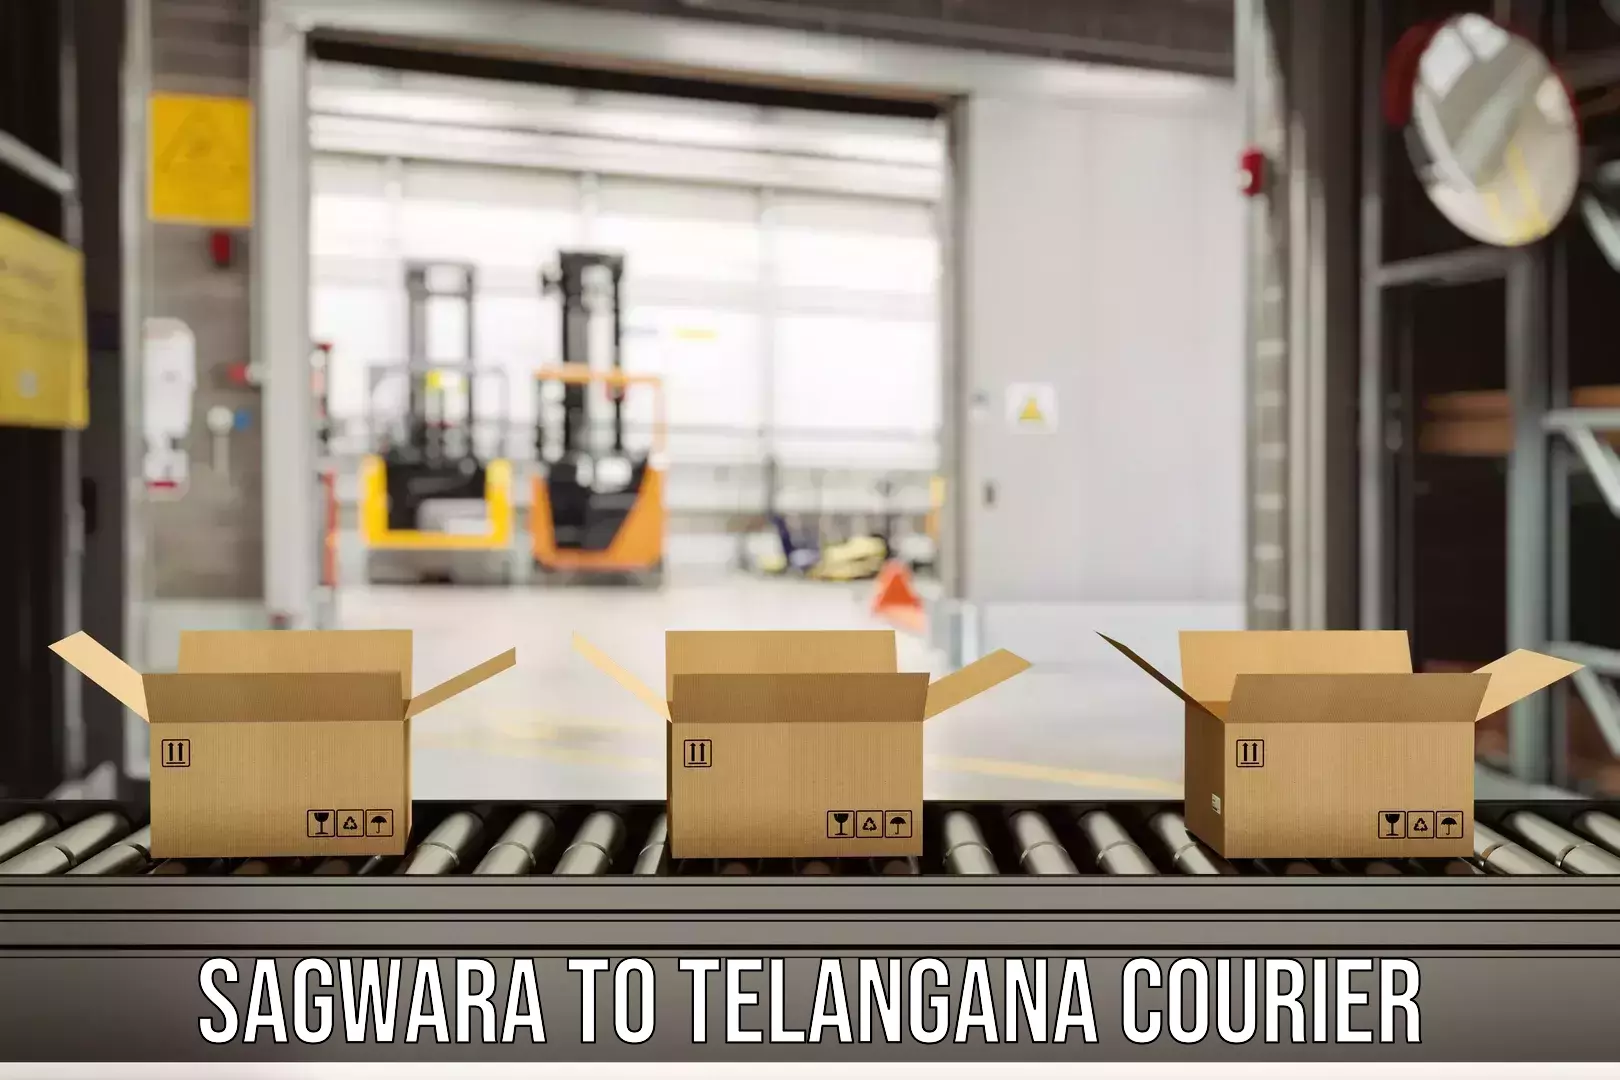 Large package courier Sagwara to Kosgi